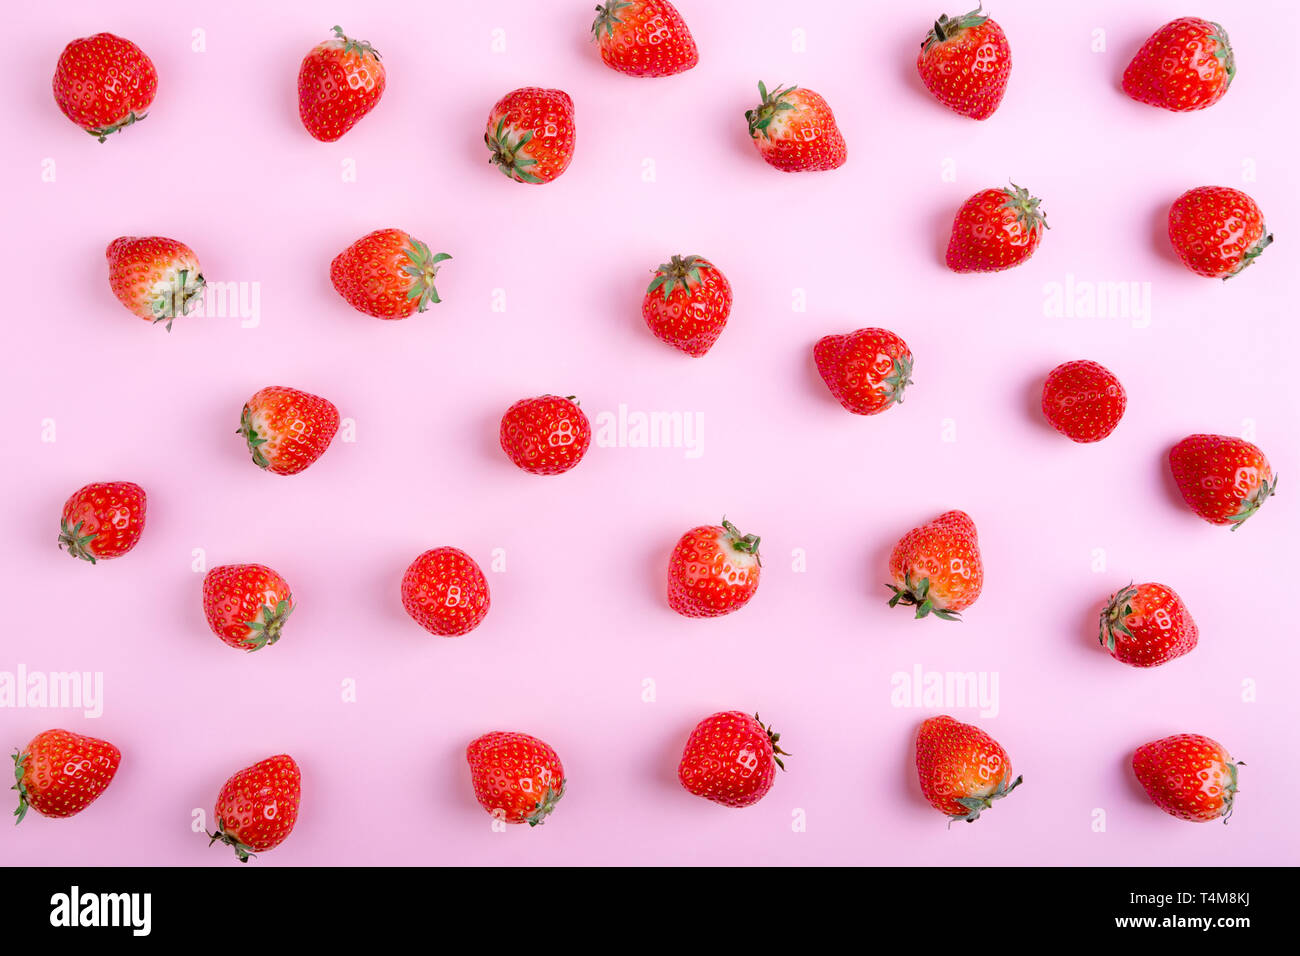 Làm cho nền điện thoại của bạn trở nên nổi bật với mẫu hoa dâu tây liền kề trên nền hồng. Sự kết hợp giữa quả dâu tây tươi ngon và họa tiết đơn giản tổng hòa đã tạo nên một tác phẩm thẩm mỹ độc đáo này. Hãy khám phá và cảm nhận sự ngọt ngào của những trái dâu tây này. (Make your phone screen stand out with strawberry pattern on pink background. The combination of fresh and delicious strawberries and simple yet sophisticated pattern has created a unique aesthetic masterpiece. Explore and savor the sweetness of these strawberries.)